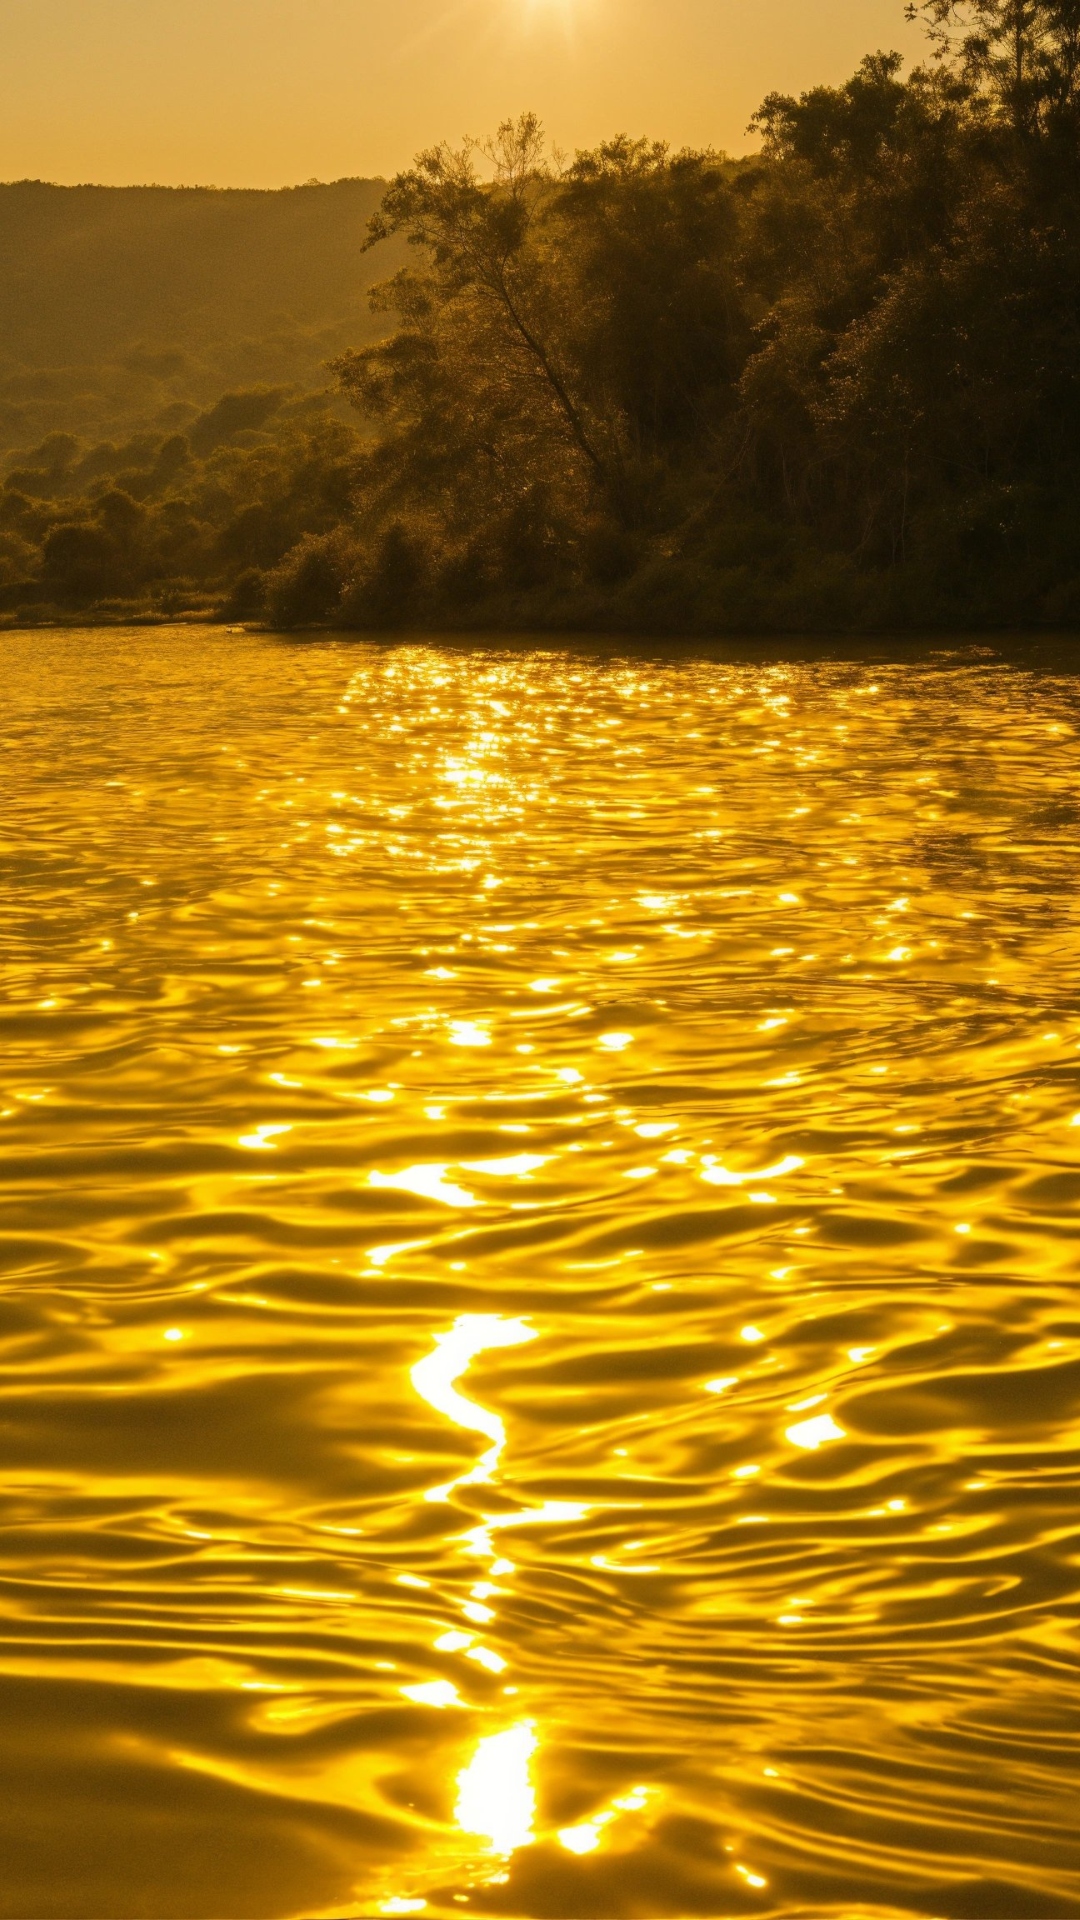 भारत की इस नदी में पानी के साथ बहता है सोना 